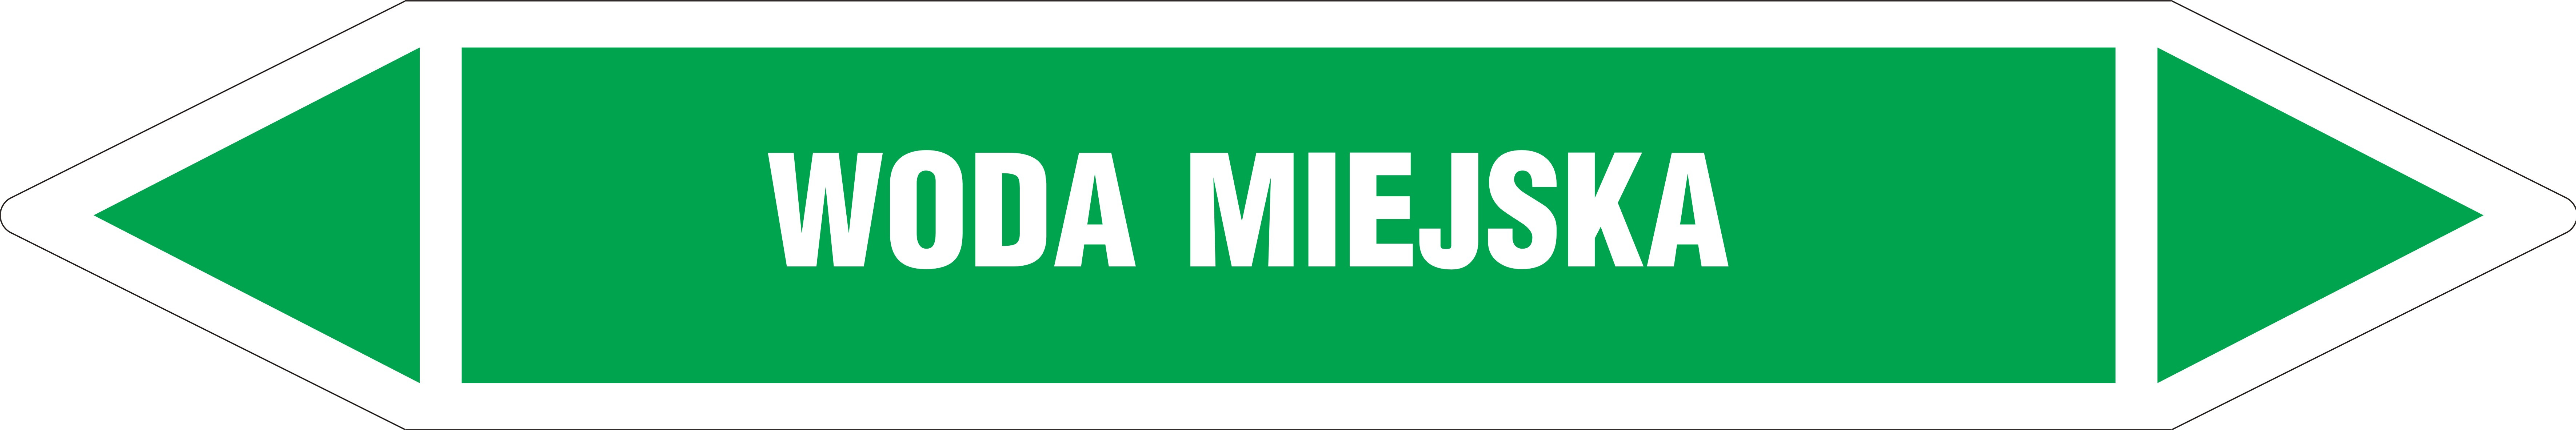 Znak - WODA MIEJSKA JF488